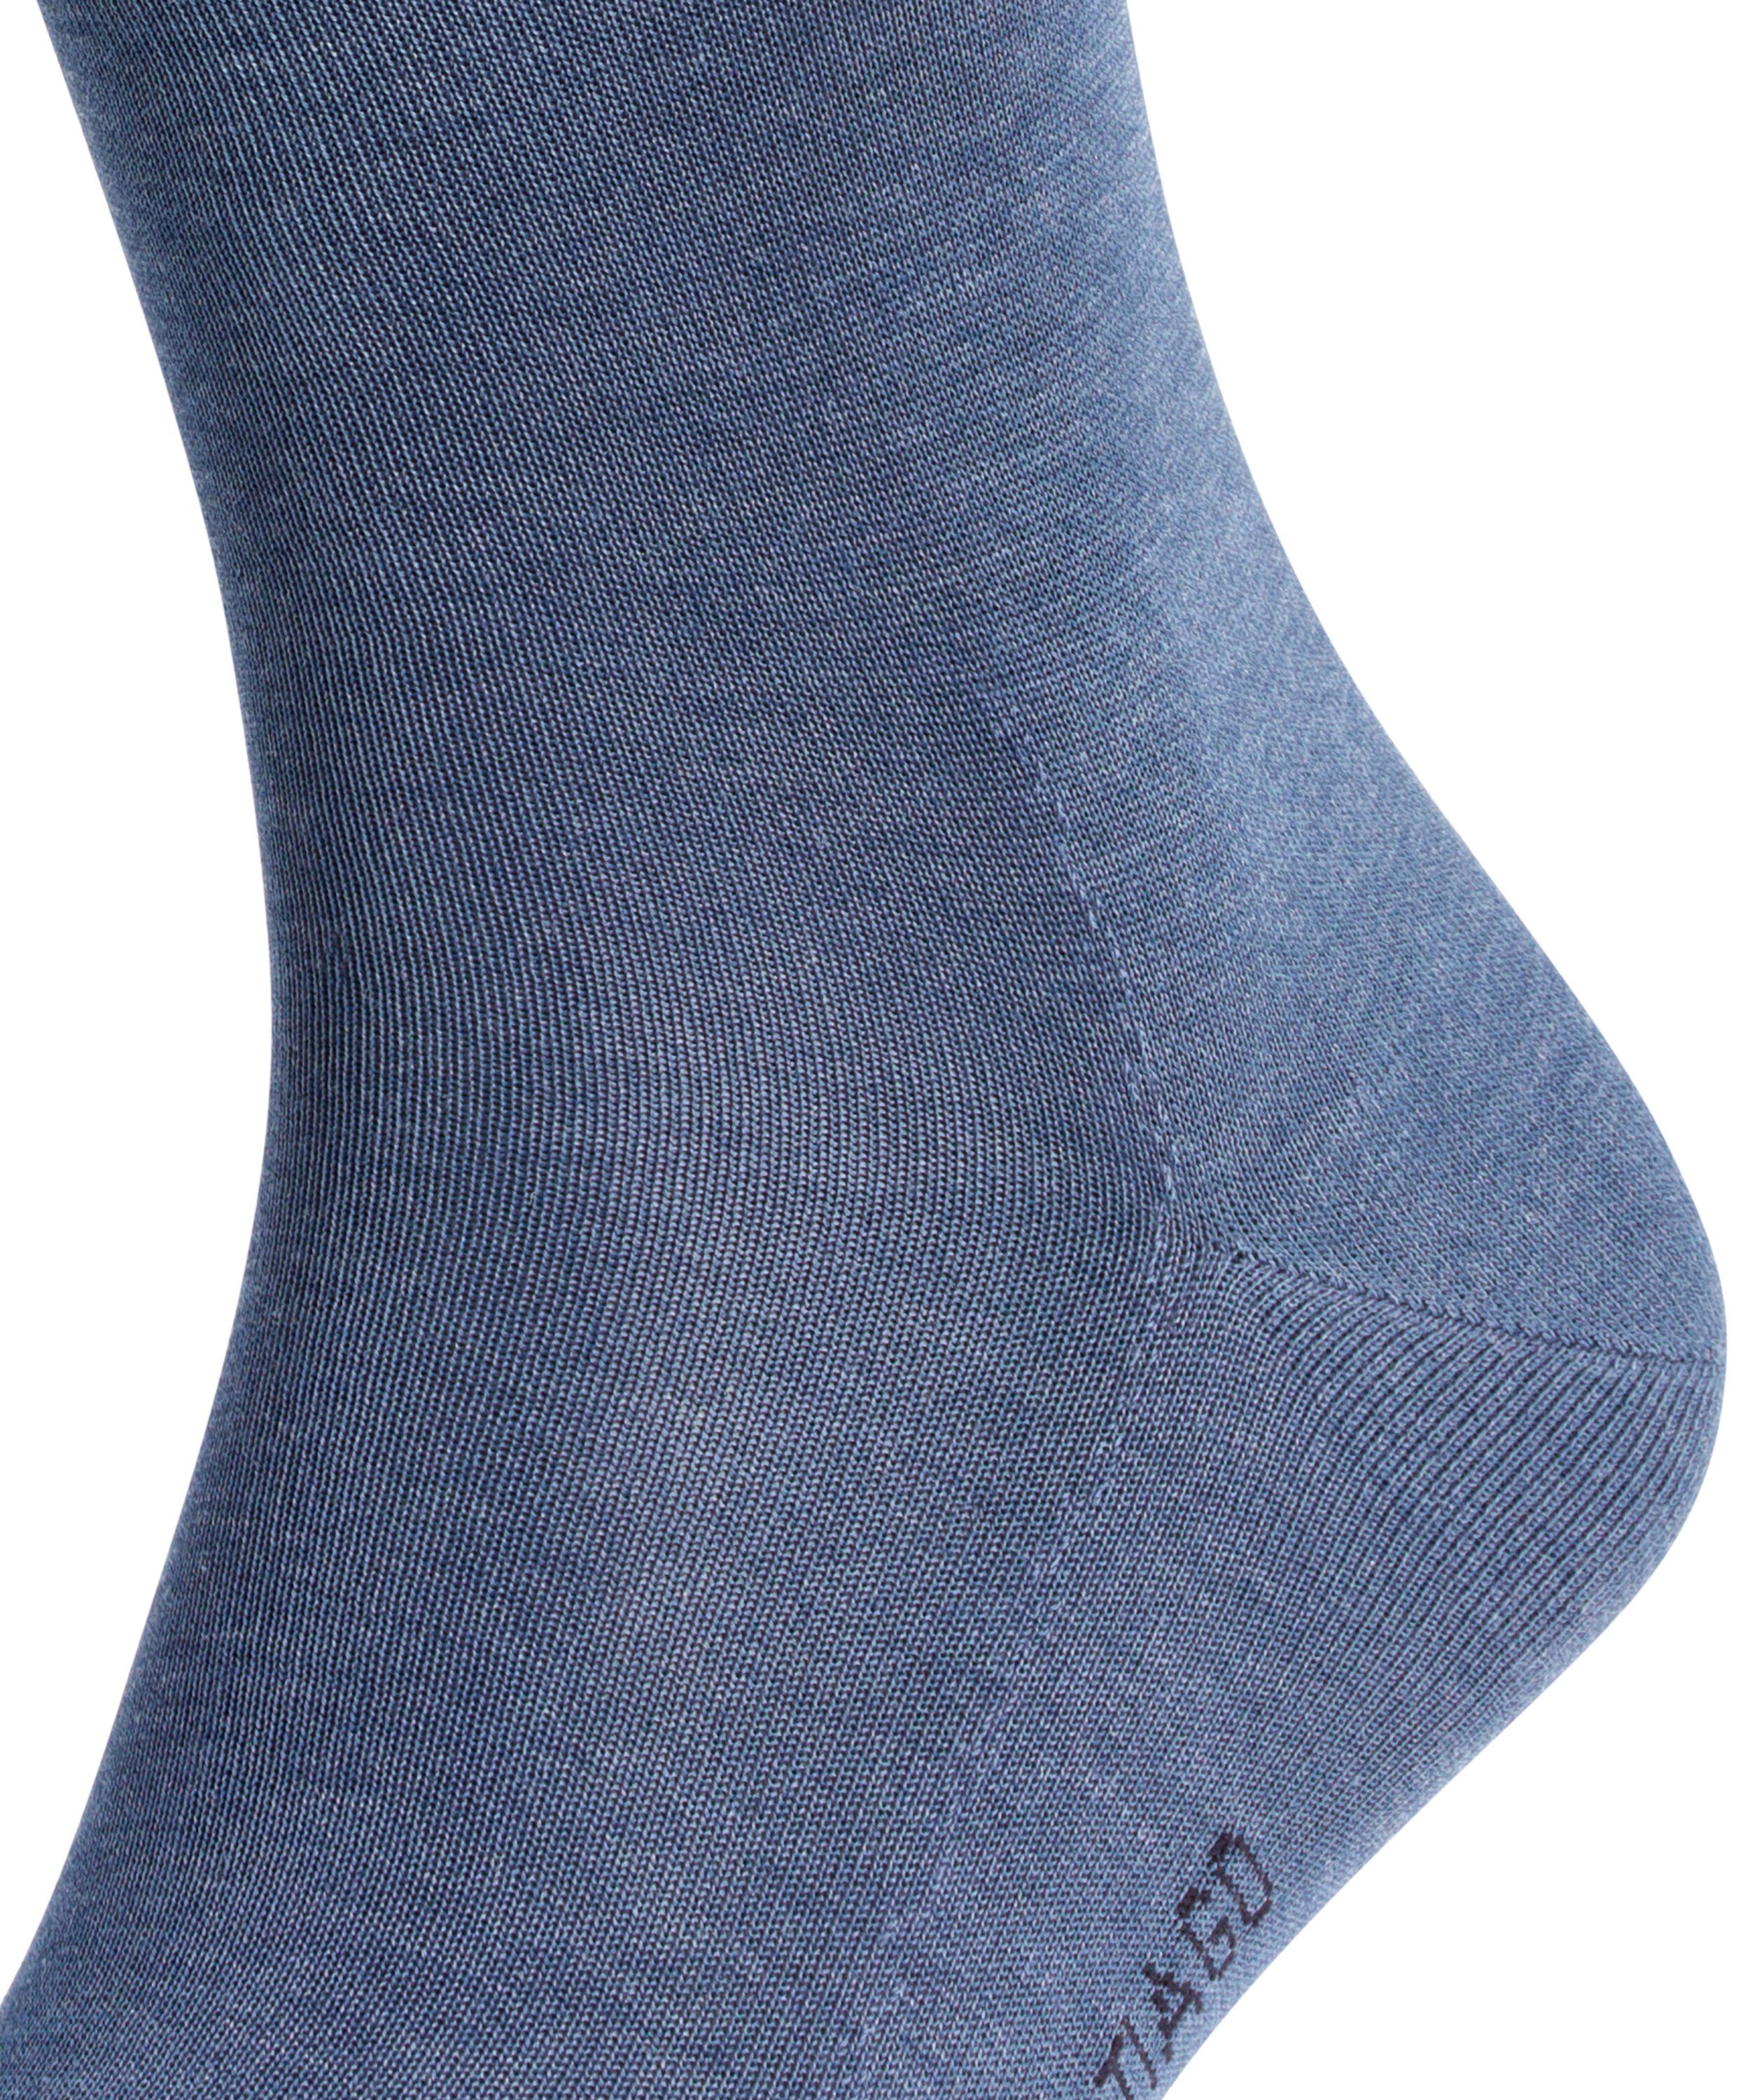 (1-Paar) (6670) FALKE Socken Tiago jeans